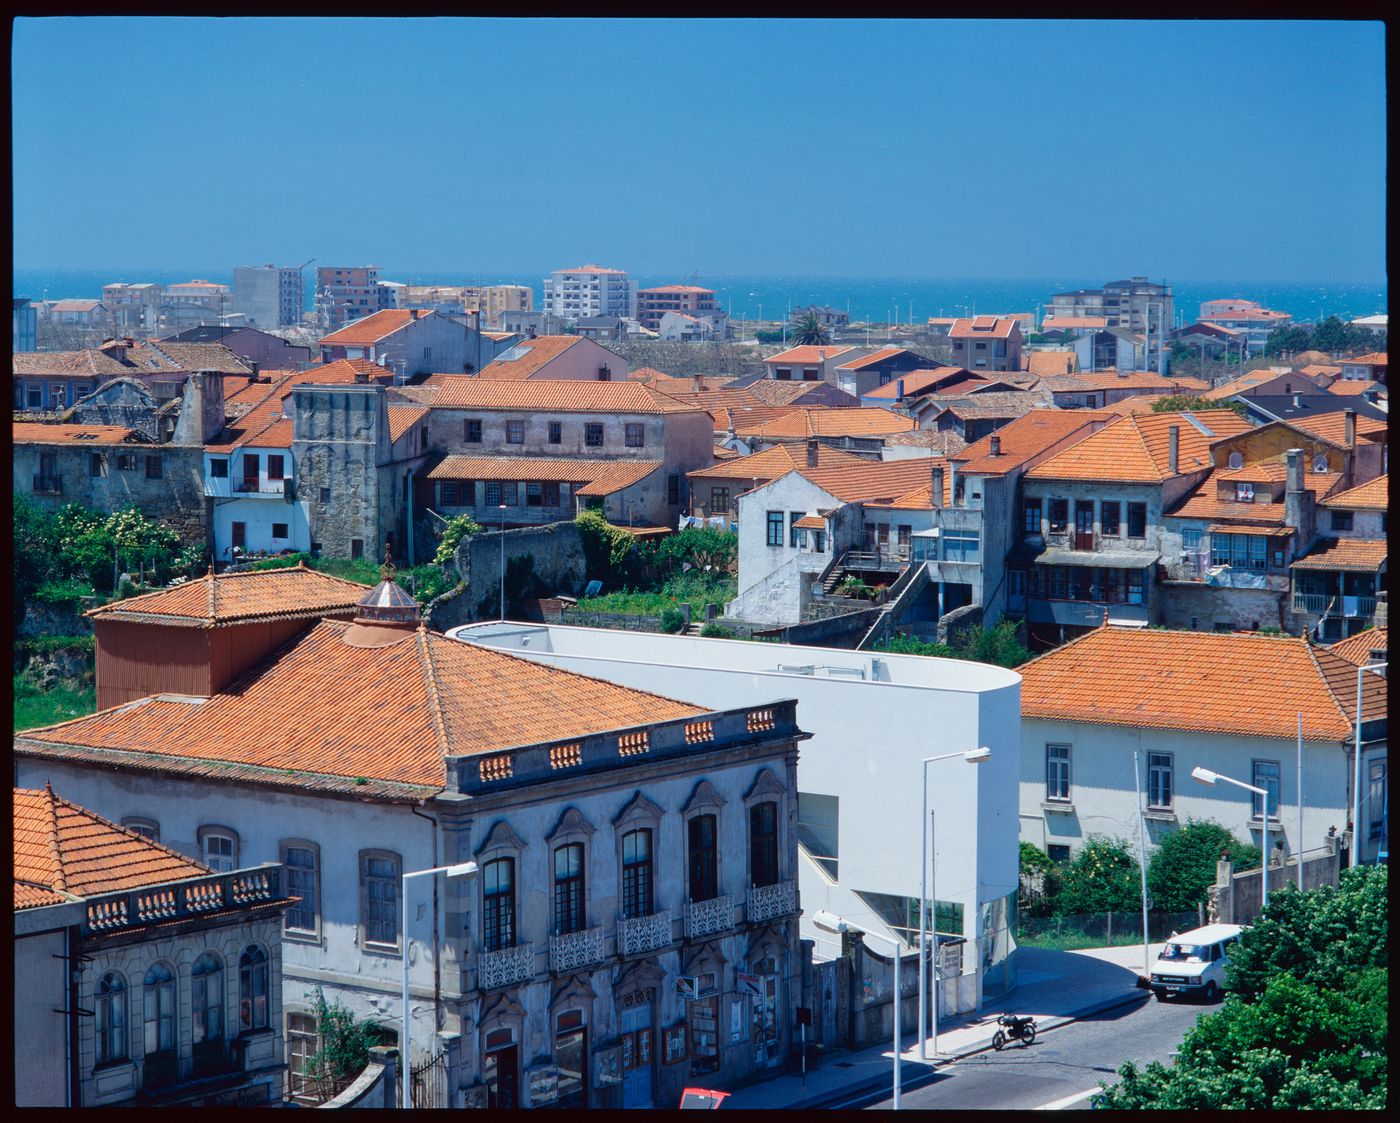 Aerial view of Banco Borges & Irmão II [Borges & Irmão bank II], Vila do Conde, Portugal